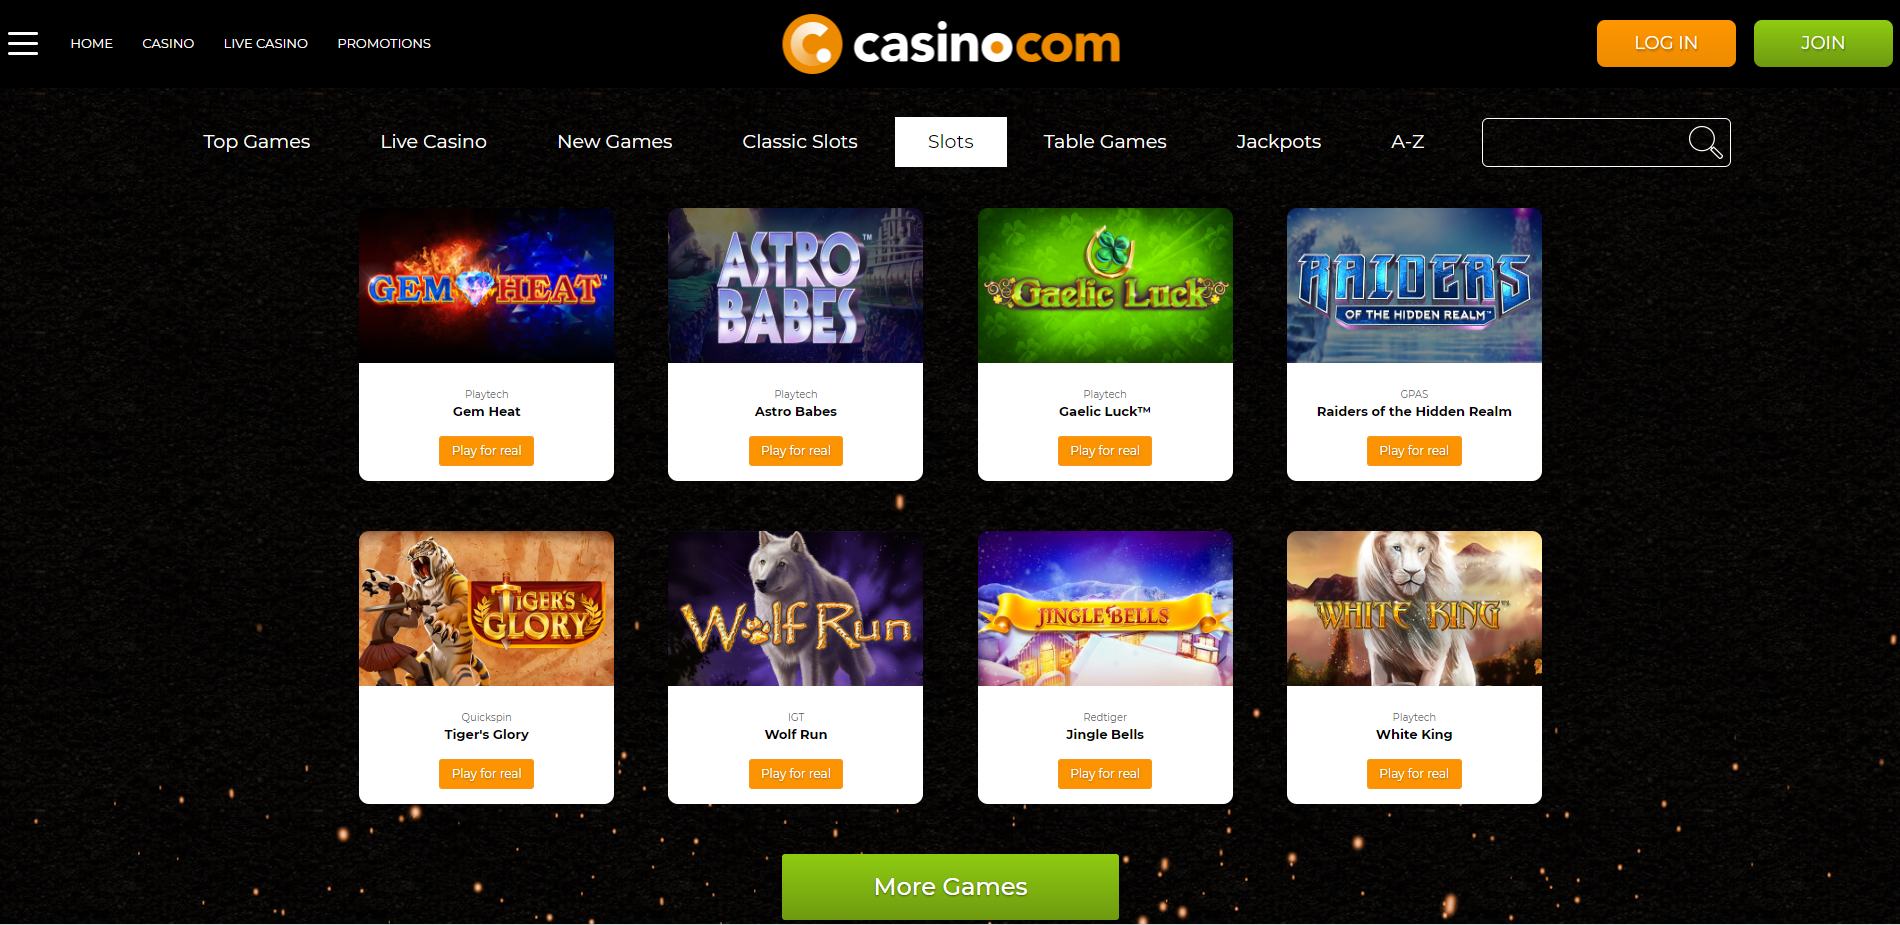 Casino.com Games selection